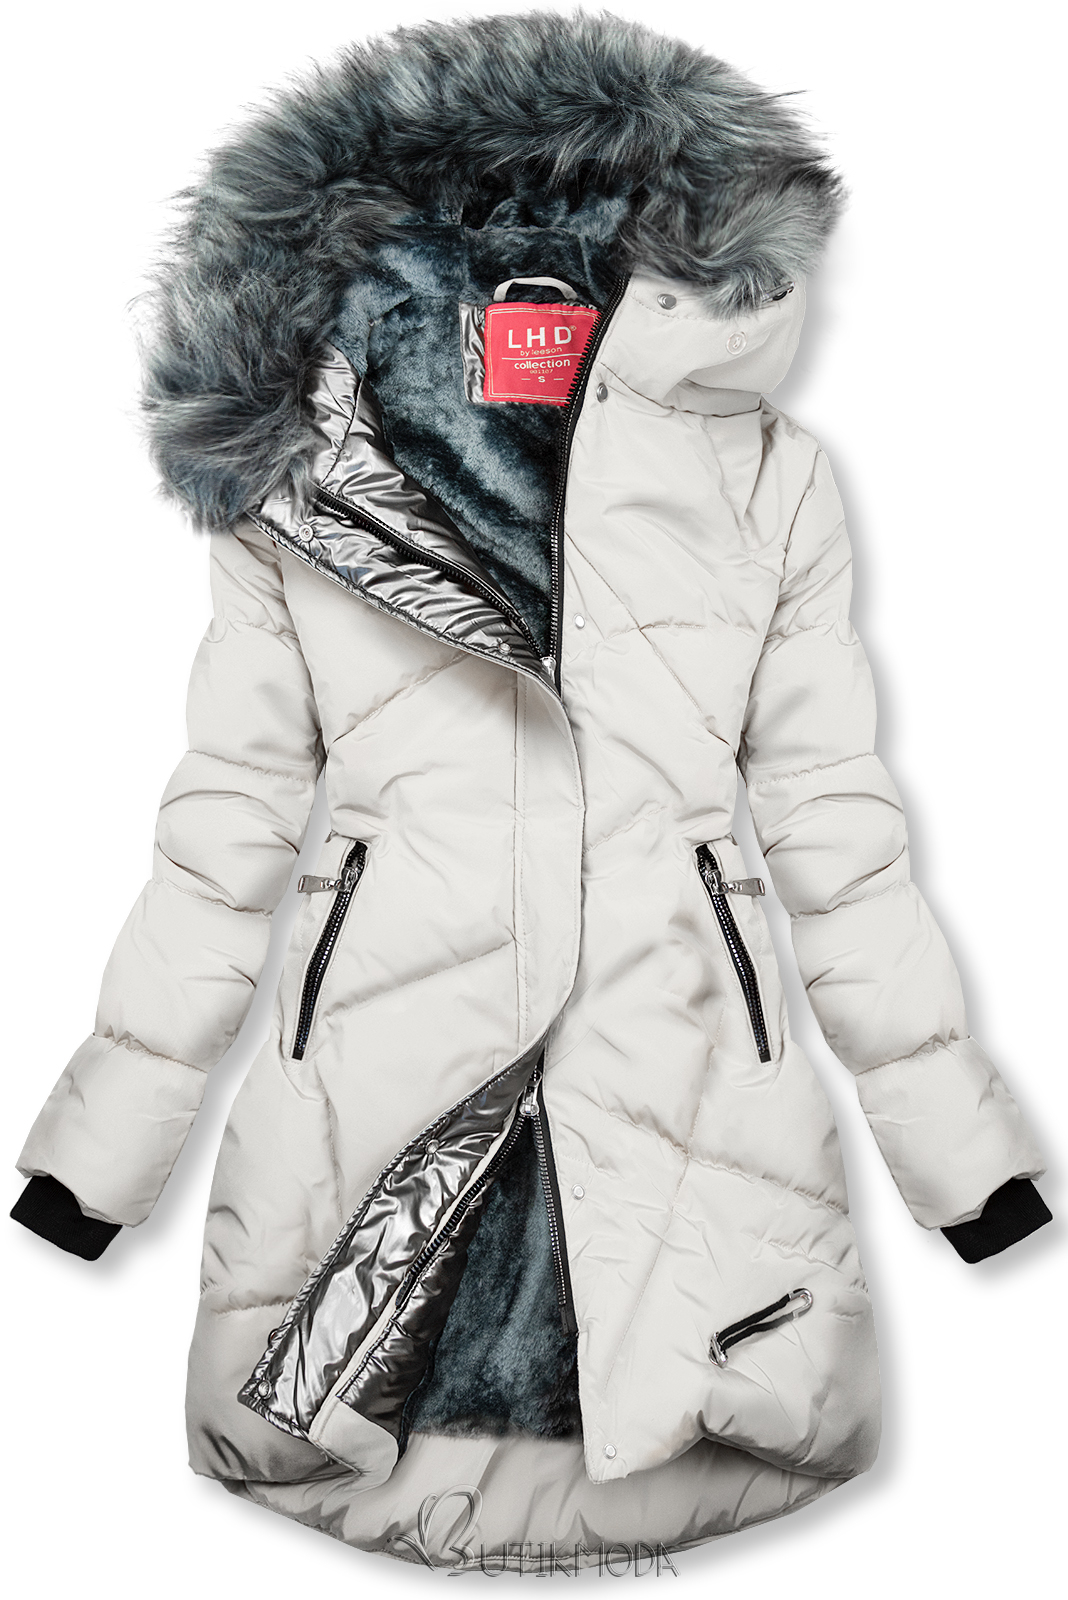 Ekrü színű téli kabát ezüstszürke színű szegéllyel